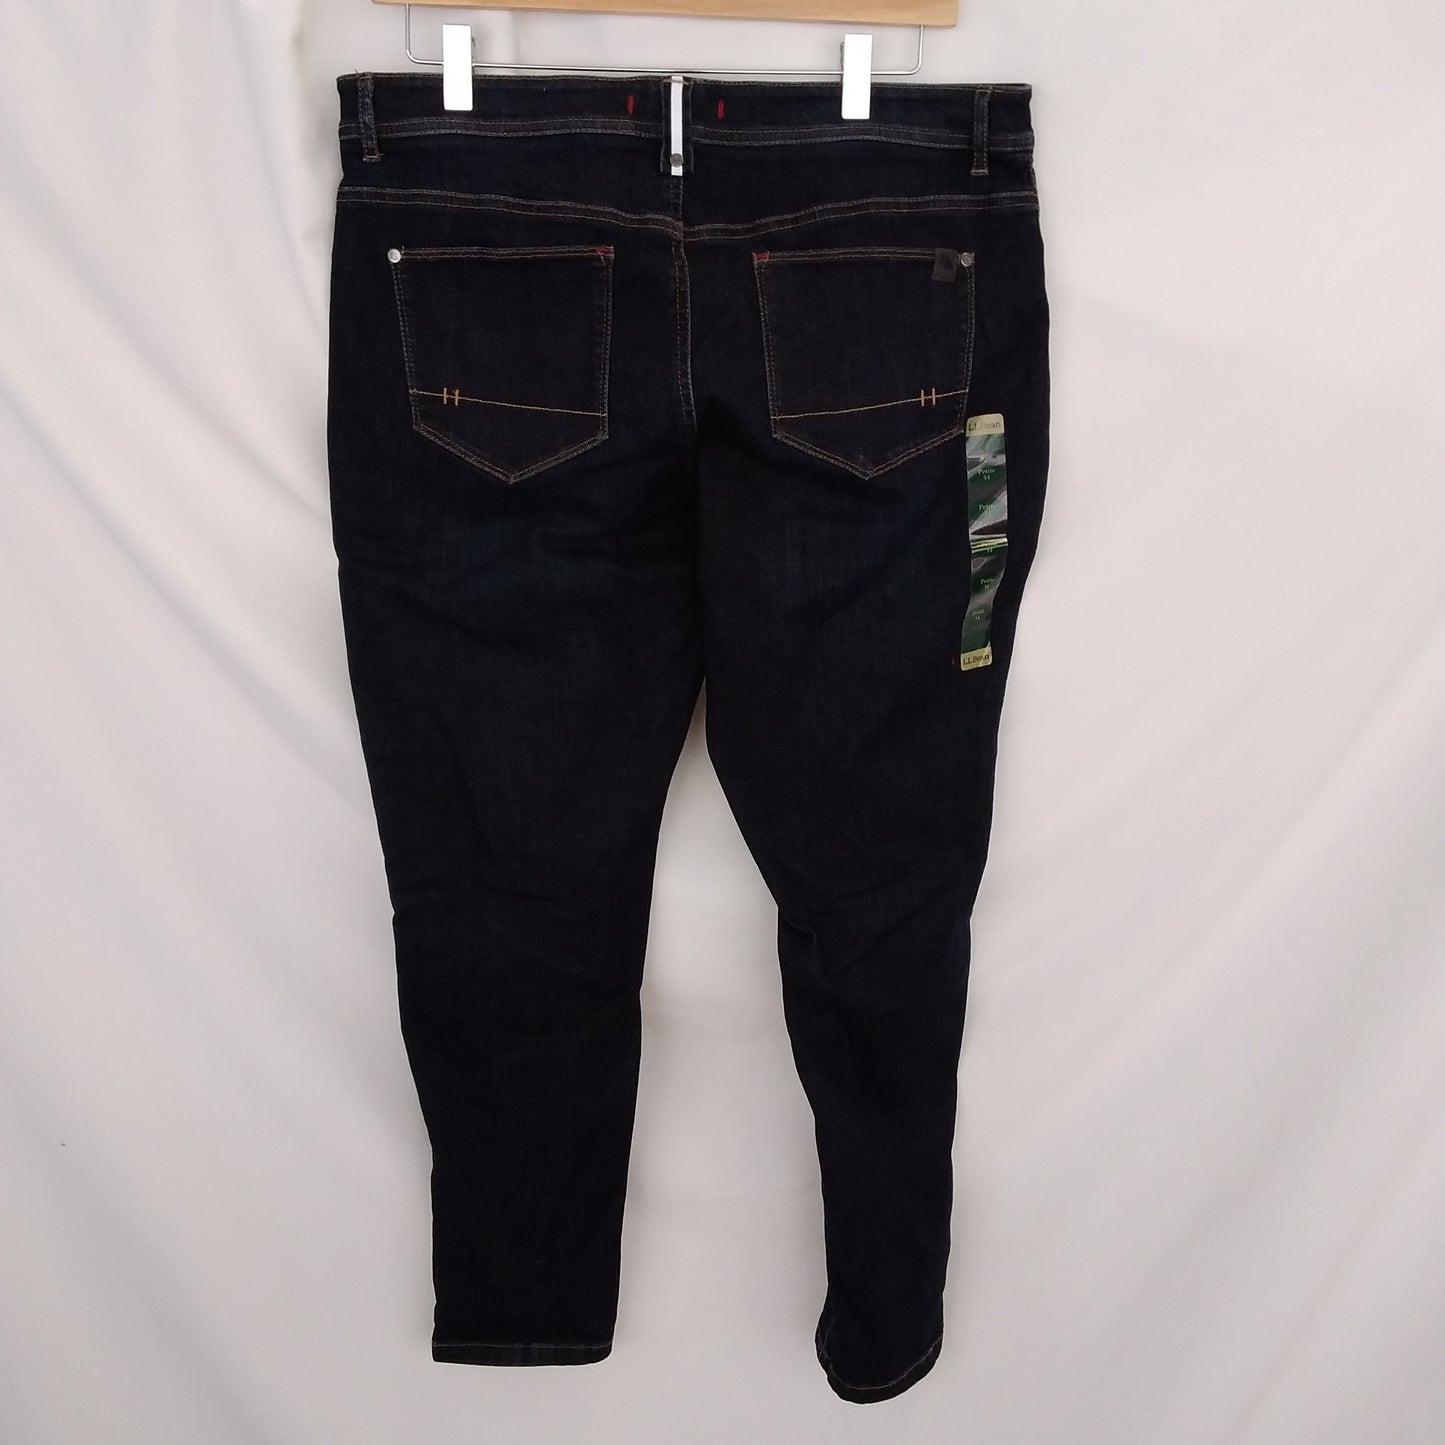 NWT - L.L. Bean Stretch Denim Jeans - 14 Petite